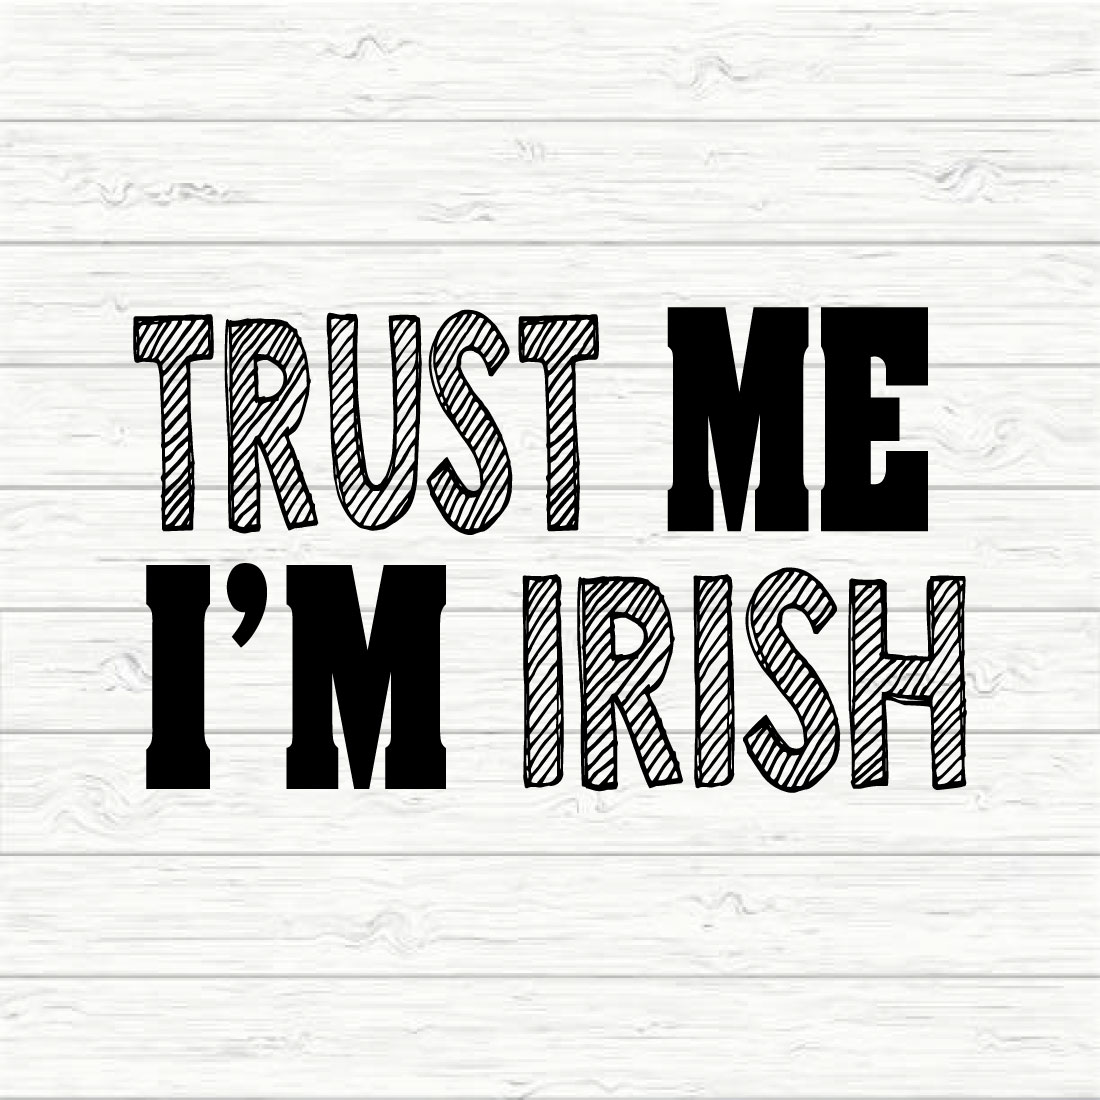 Trust Me I'm Irish preview image.